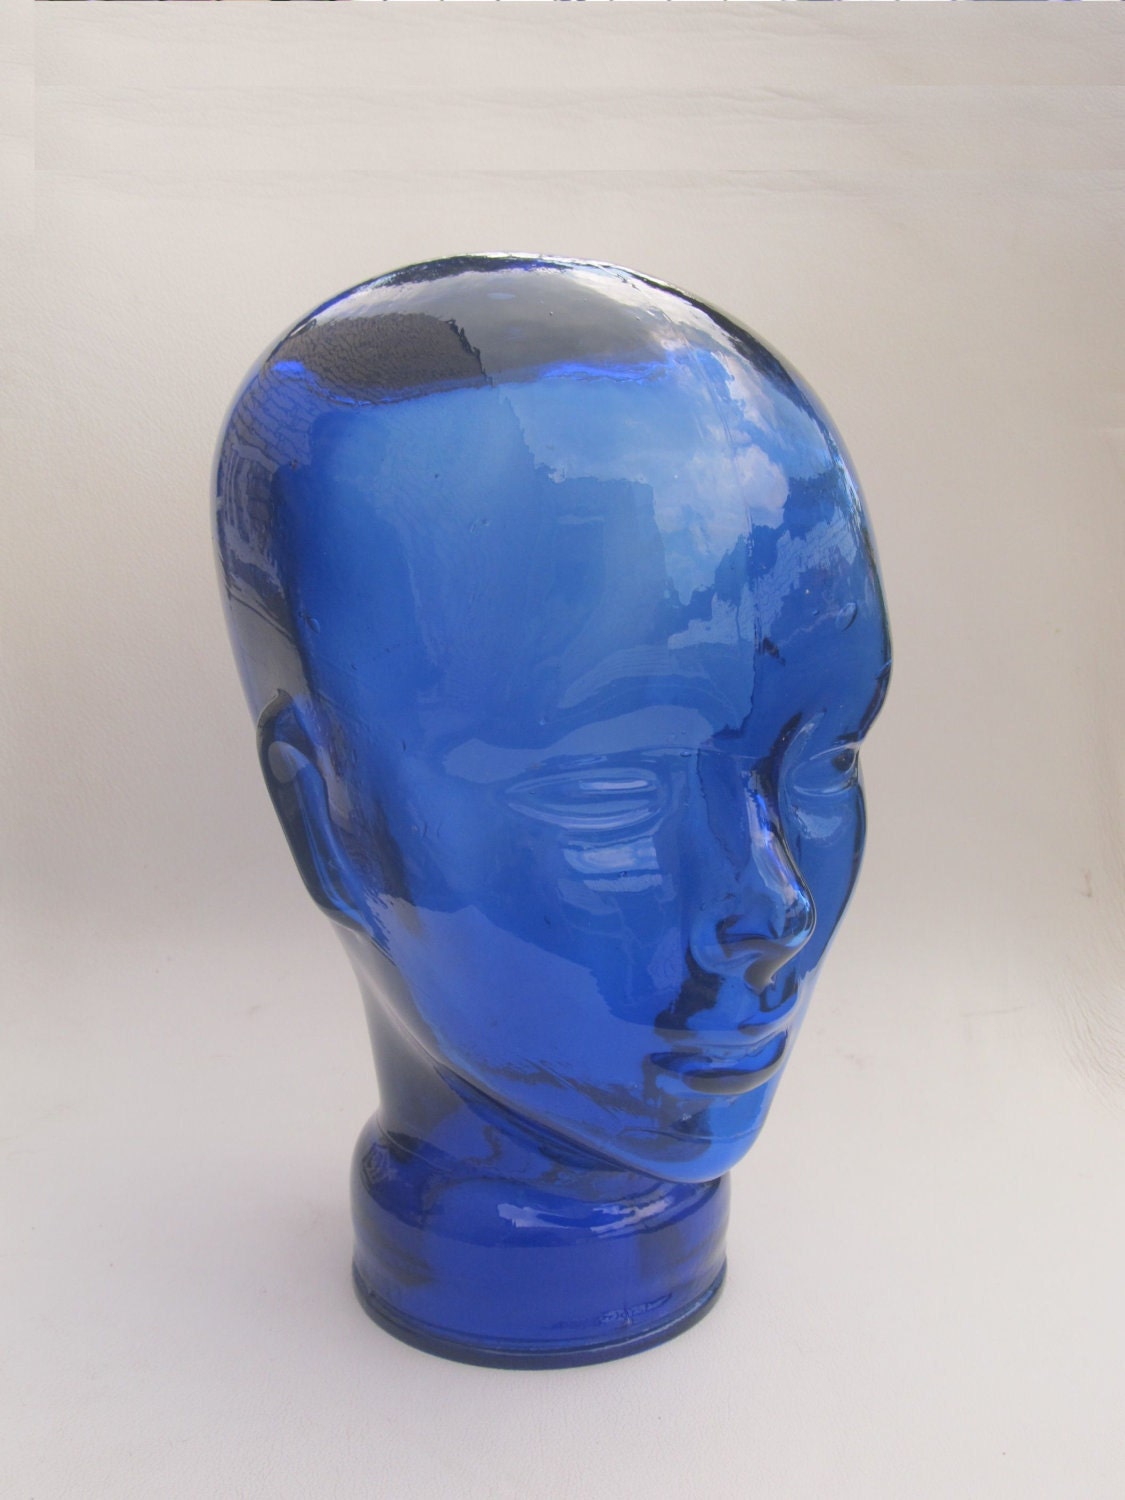 Cabezal de cristal azul de los años 80, el típico cabezal de los años 70 o 80 se puede utilizar para auriculares, peluca, gafas de sol, etc.